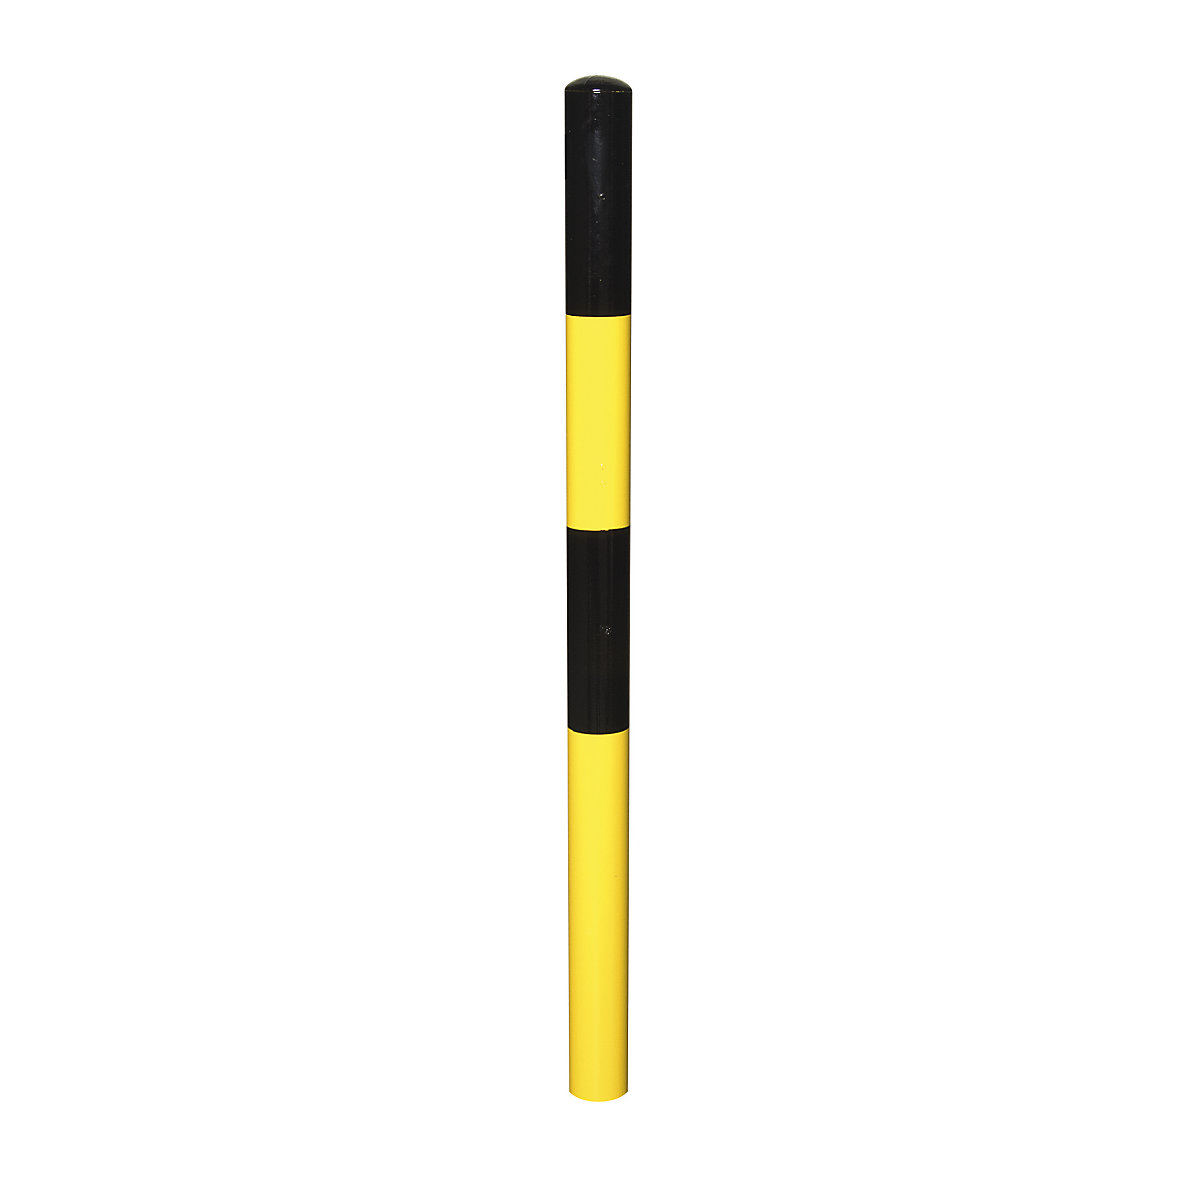 Sperrpfosten, zum Einbetonieren, Ø 60 mm, schwarz-gelb lackiert, 1 Öse